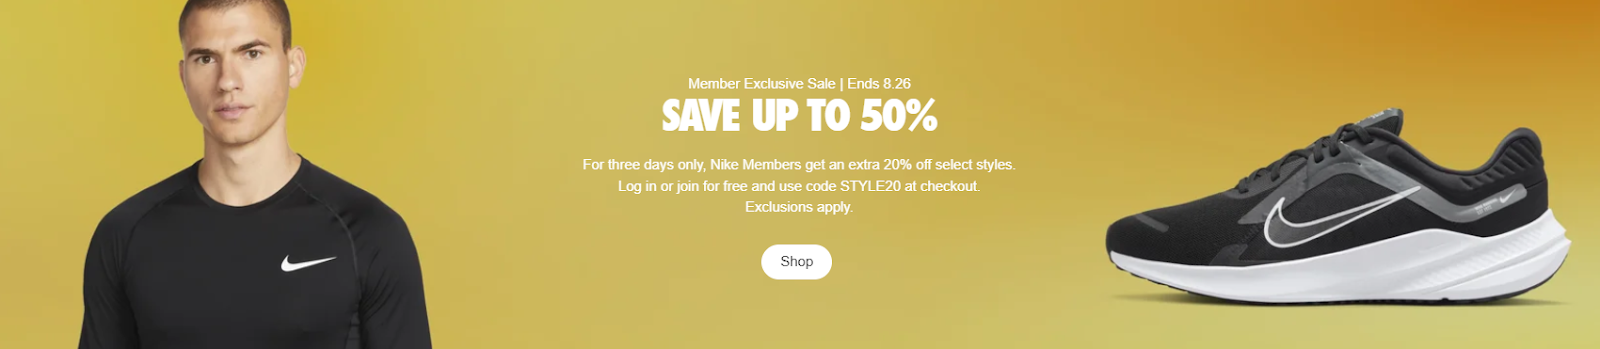 Nike discount for members